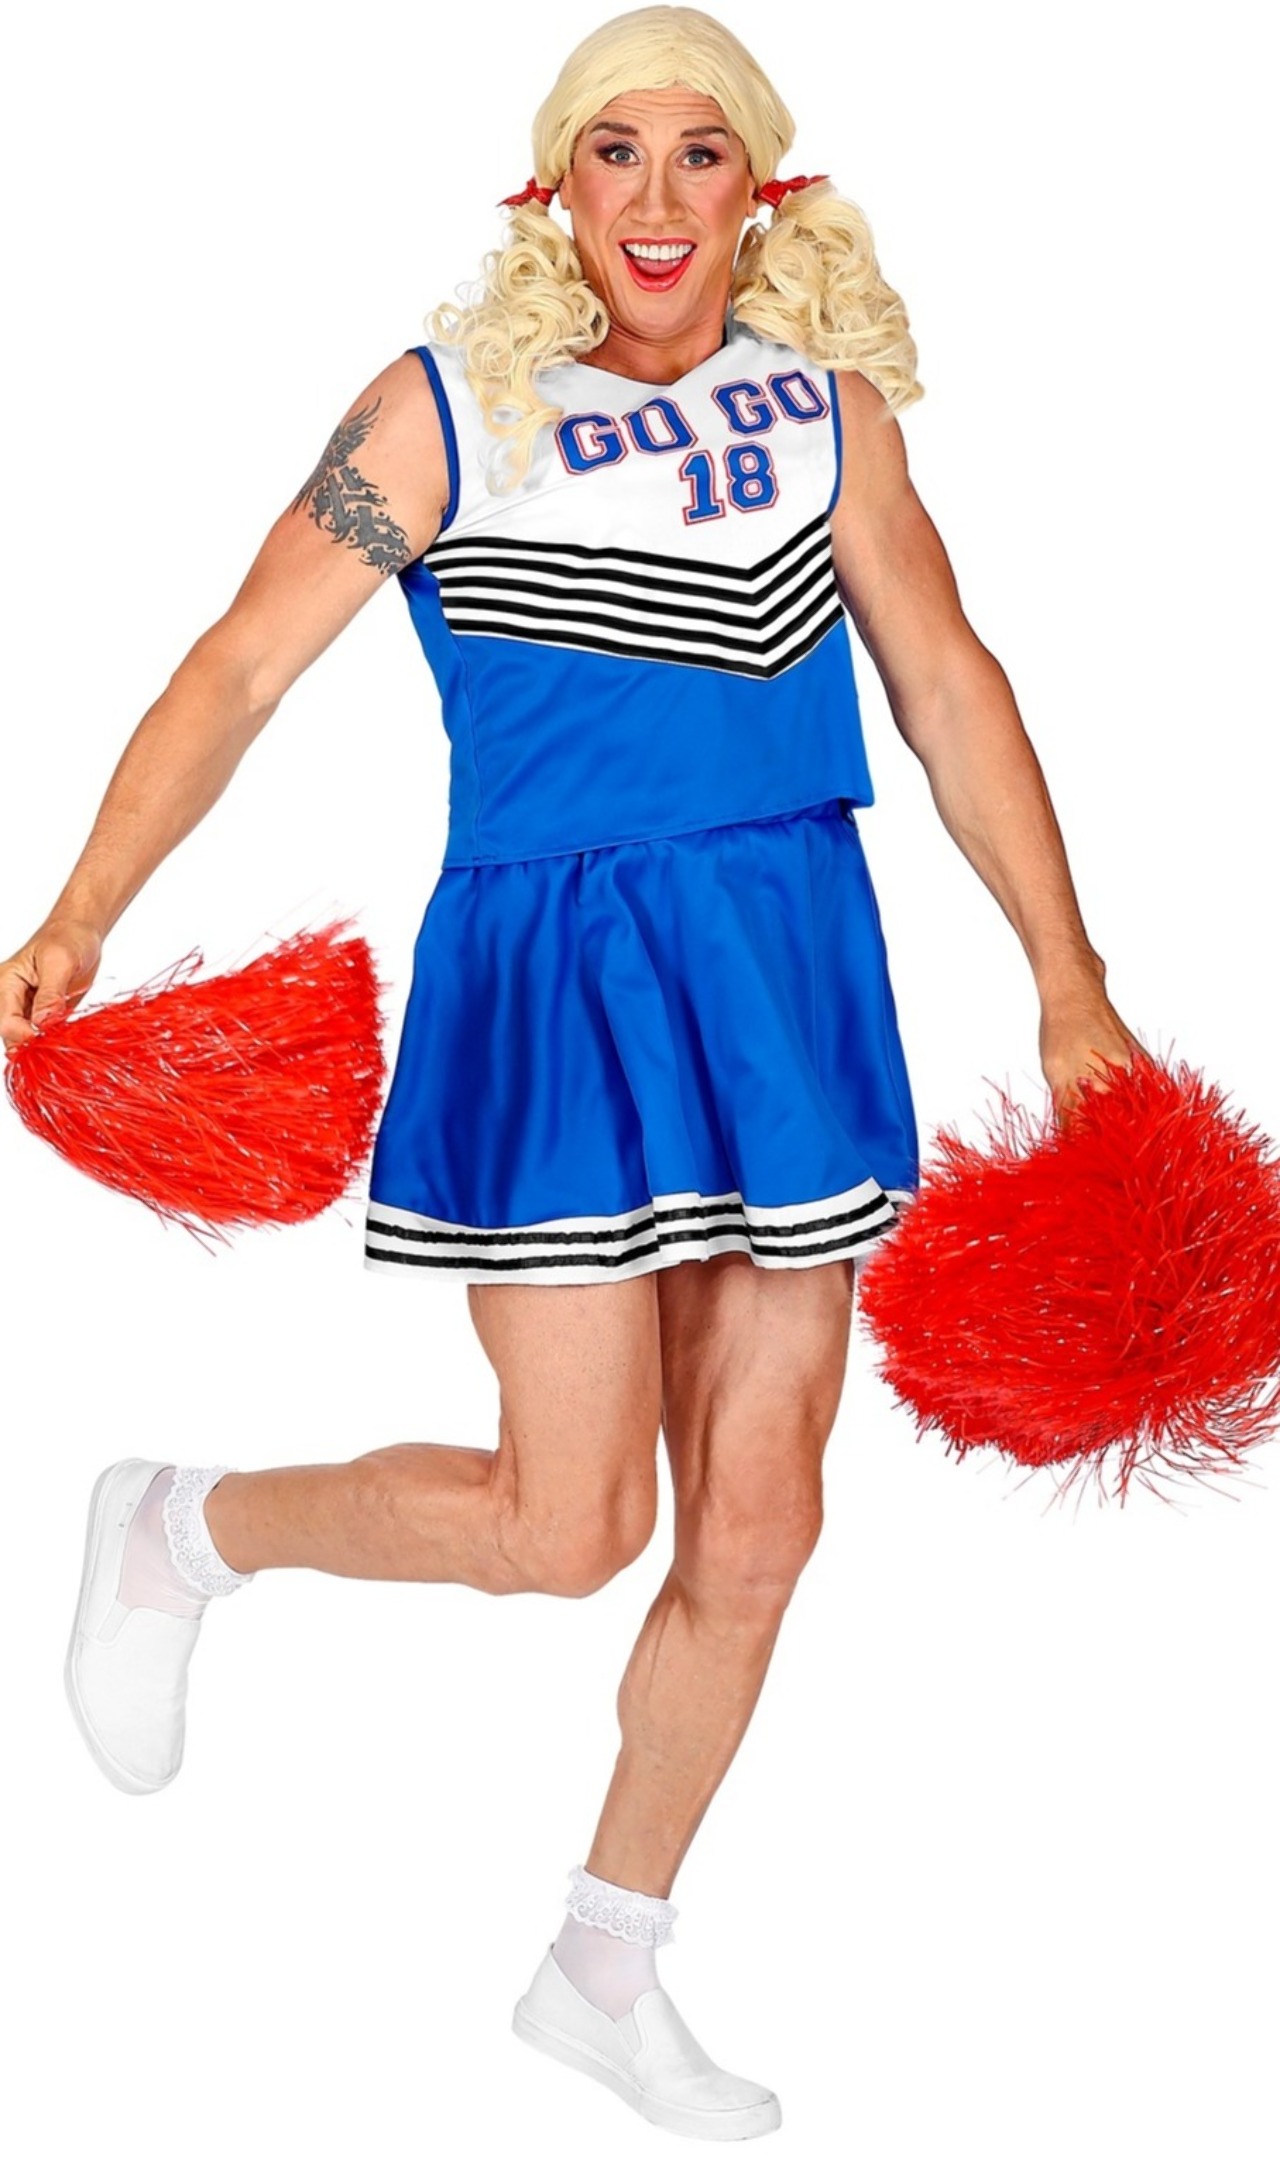 Disfraz de Animadora Cheerleader para hombre